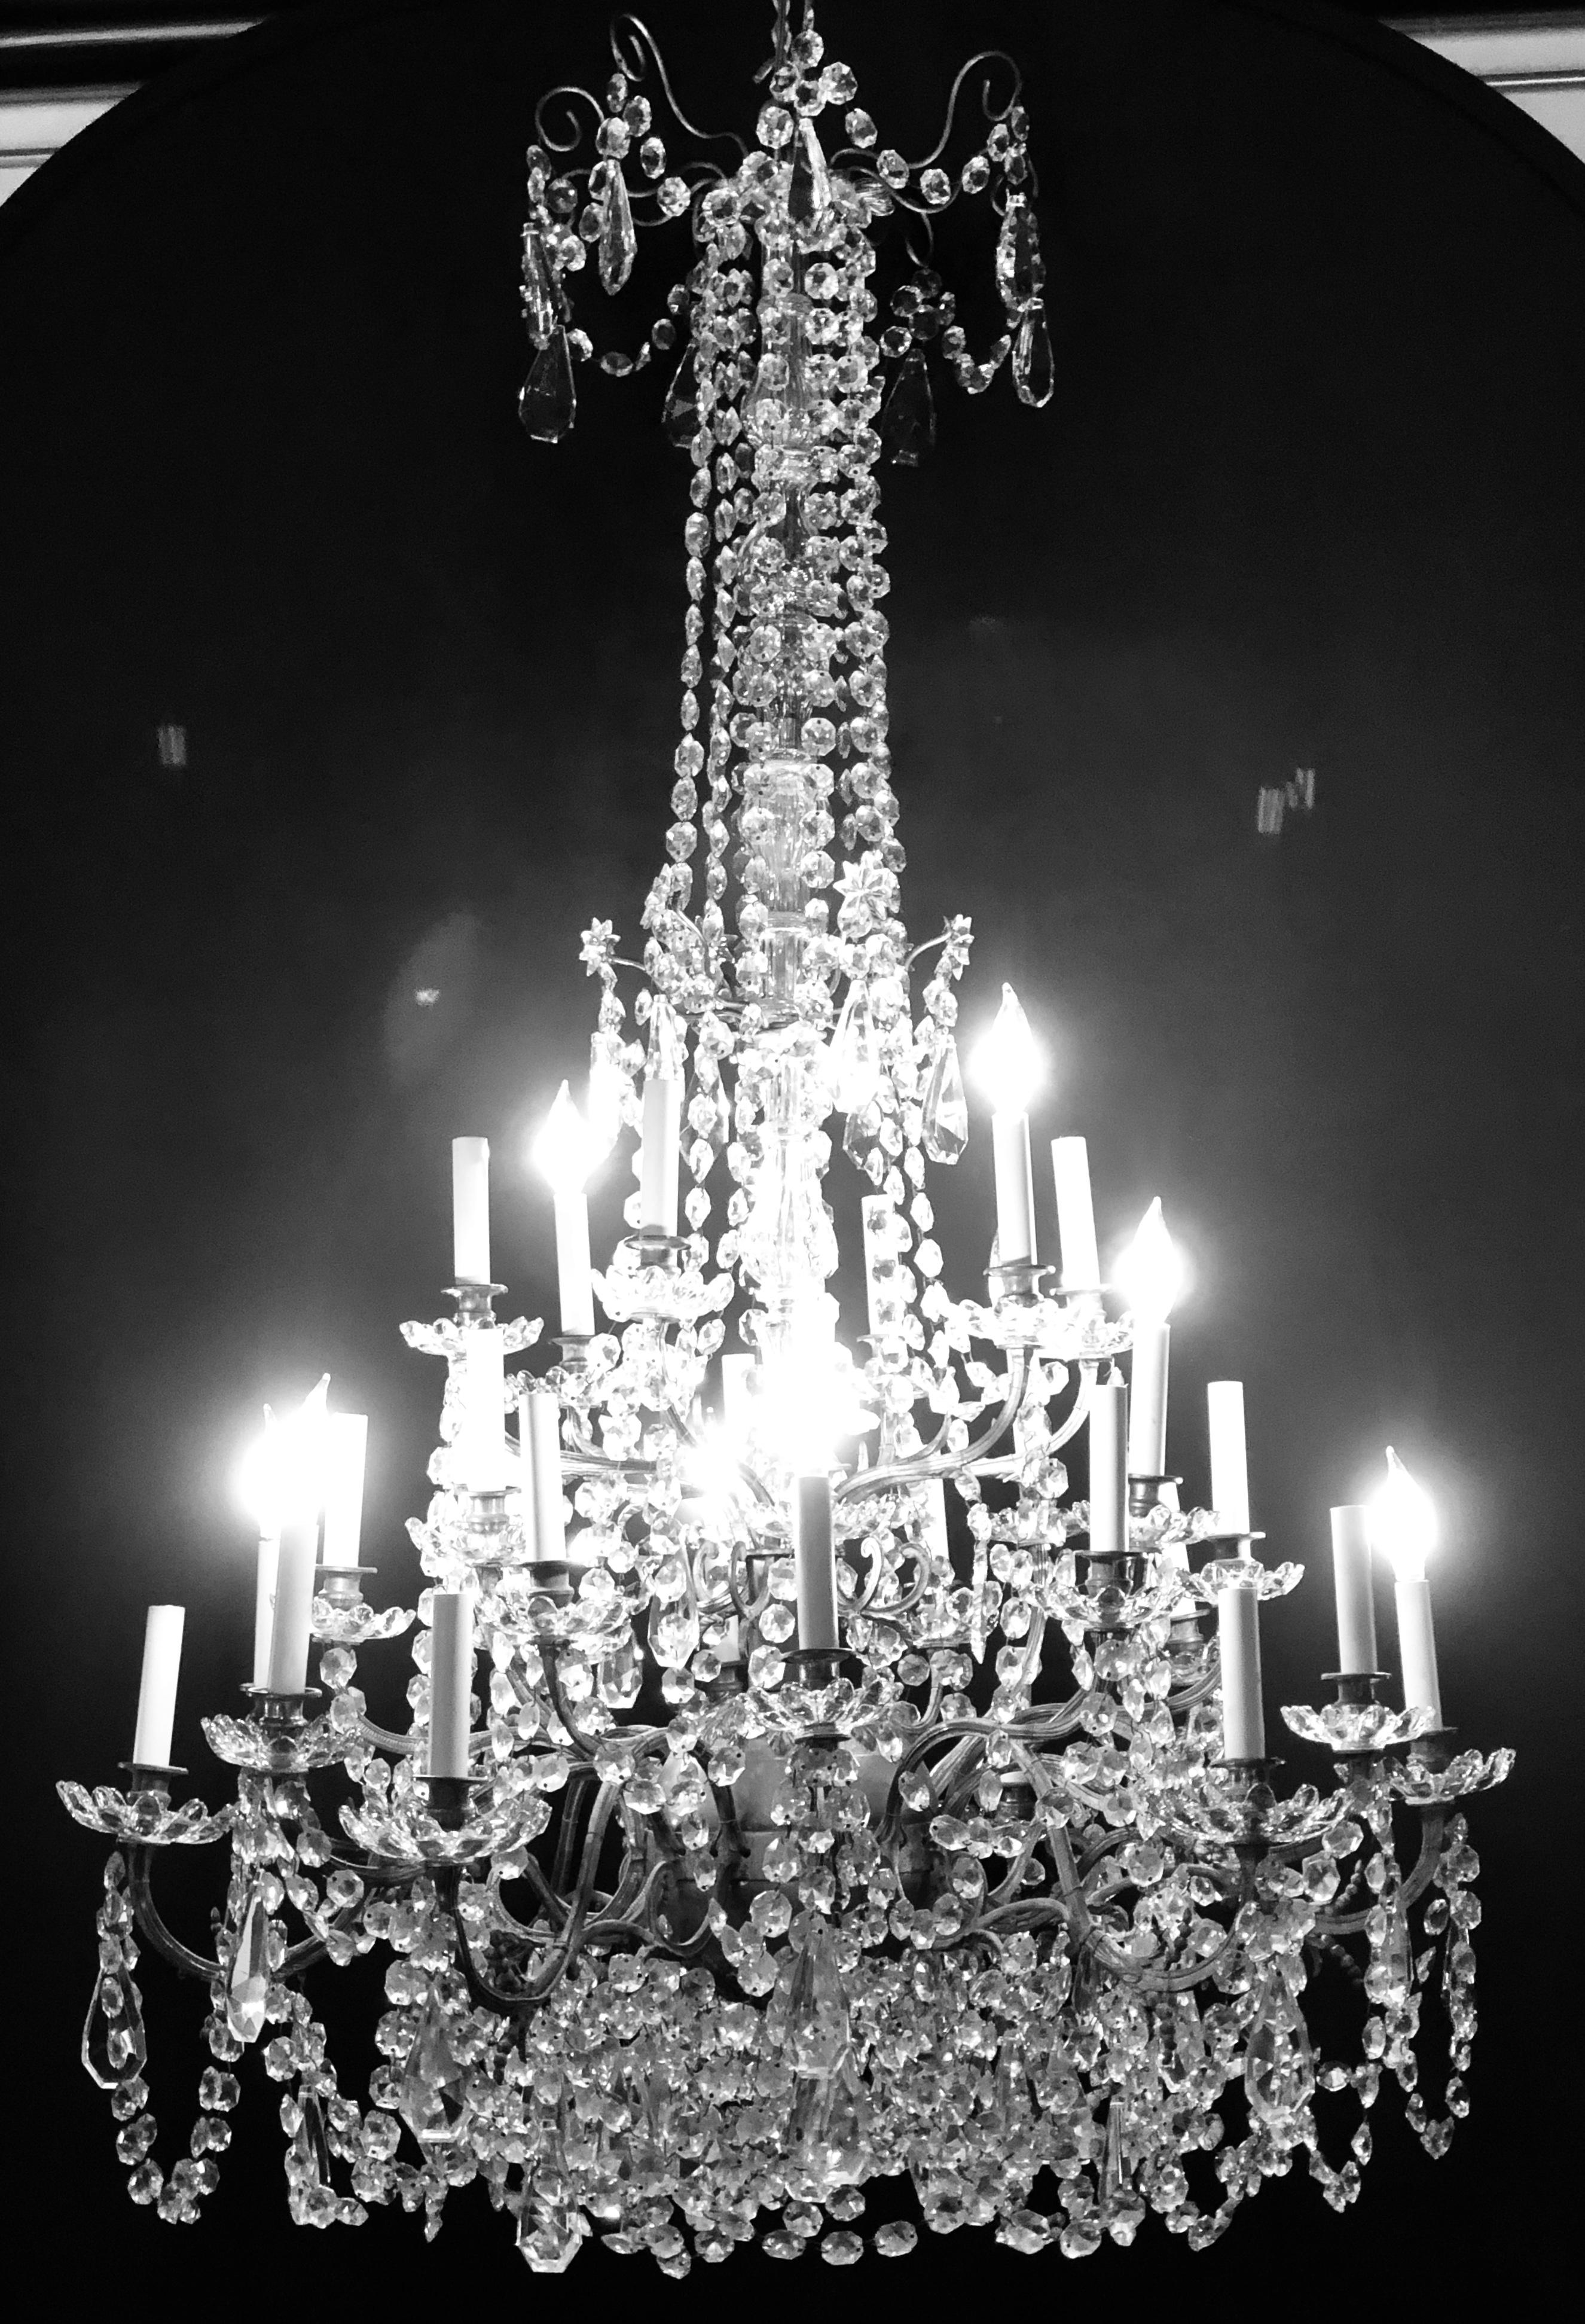 Palastartiger französischer Säulenlüster mit dreißig Lichtern aus Kristall und Messing aus dem 19. oder frühen 20. Diese spektakuläre Leuchte besteht aus einer kreisförmigen Kugel in der Mitte, aus der eine Vielzahl von glänzenden, geschliffenen